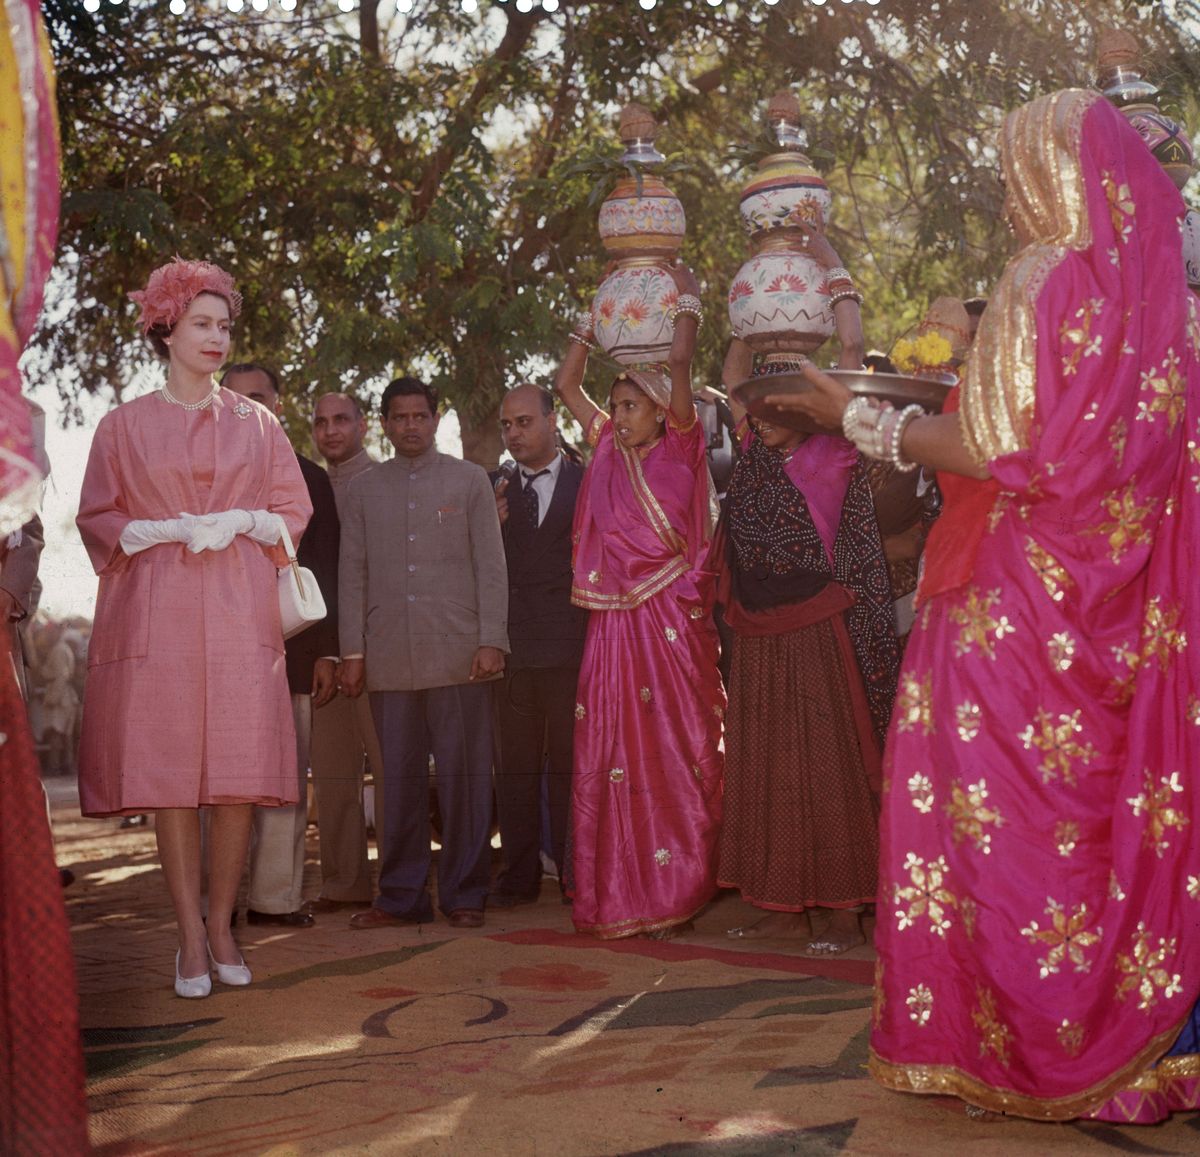 kraljica elizabeth ii v vzorni vasi v jaipurju, indija, med kraljevsko turnejo, 22. januar 1961 fotografija derek berwinfox photoshulton arhivgetty images